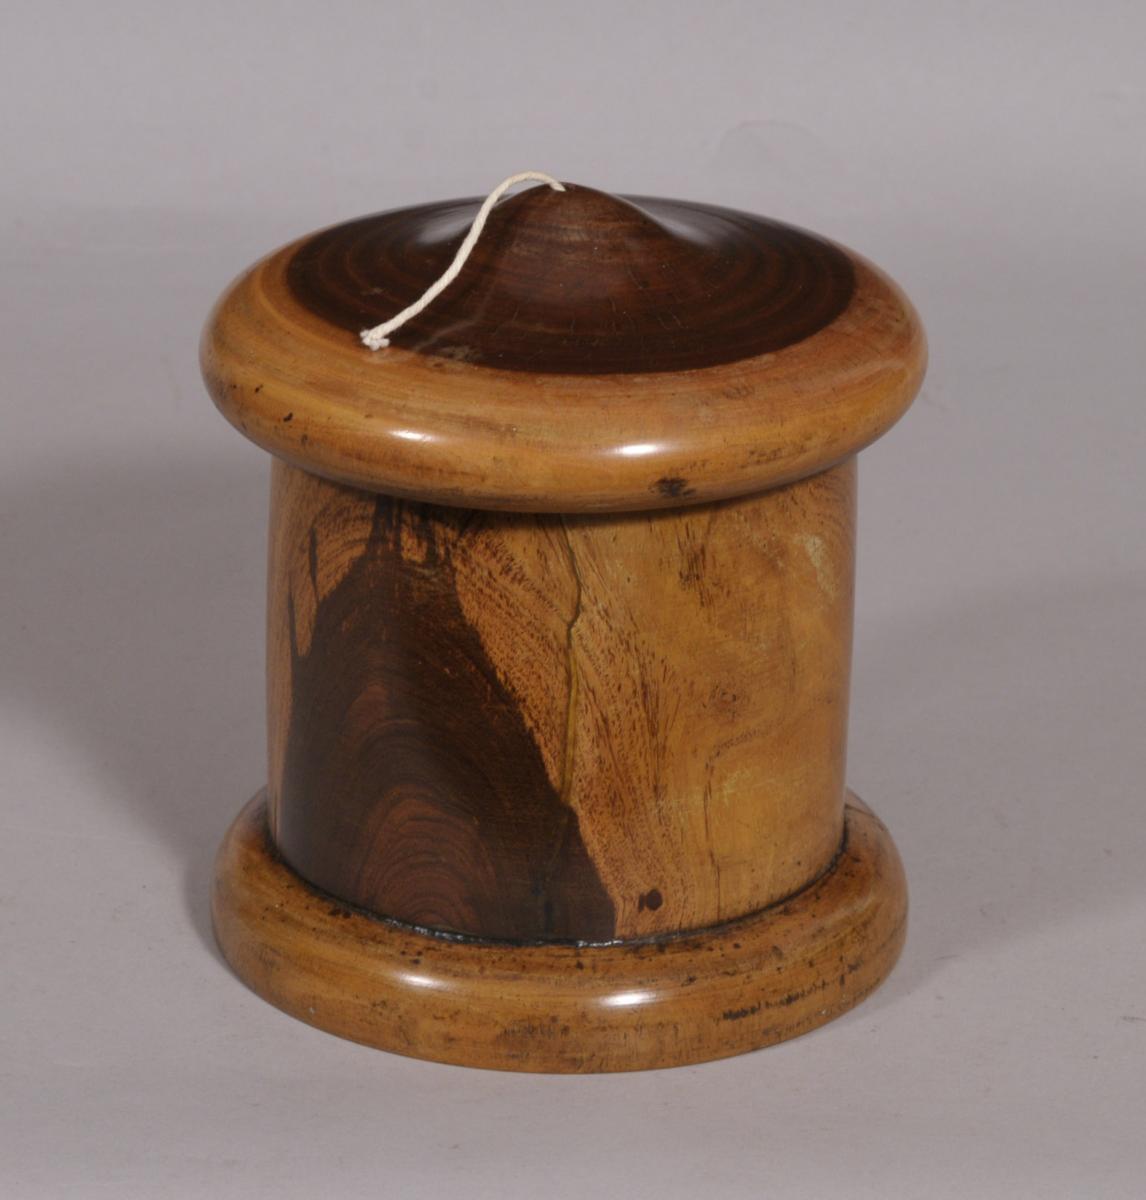 S/3981 Antique Treen 19th Century Lignum Vitae String Barrel